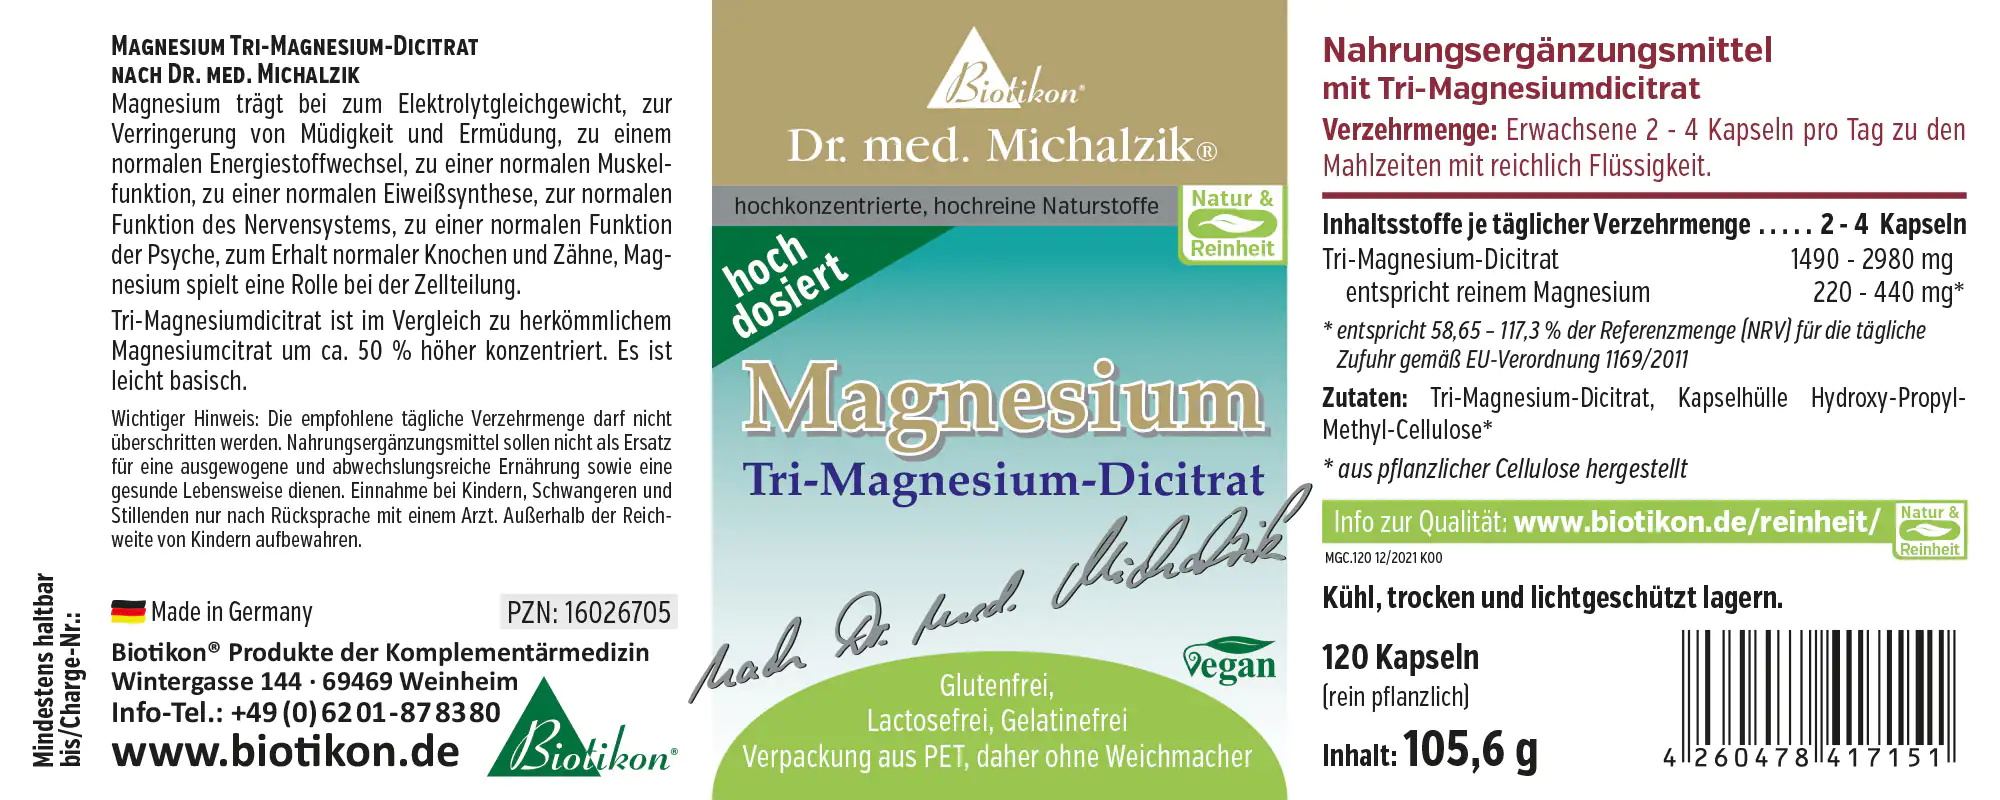 Magnésium - dicitrate de tri-magnésium gélules